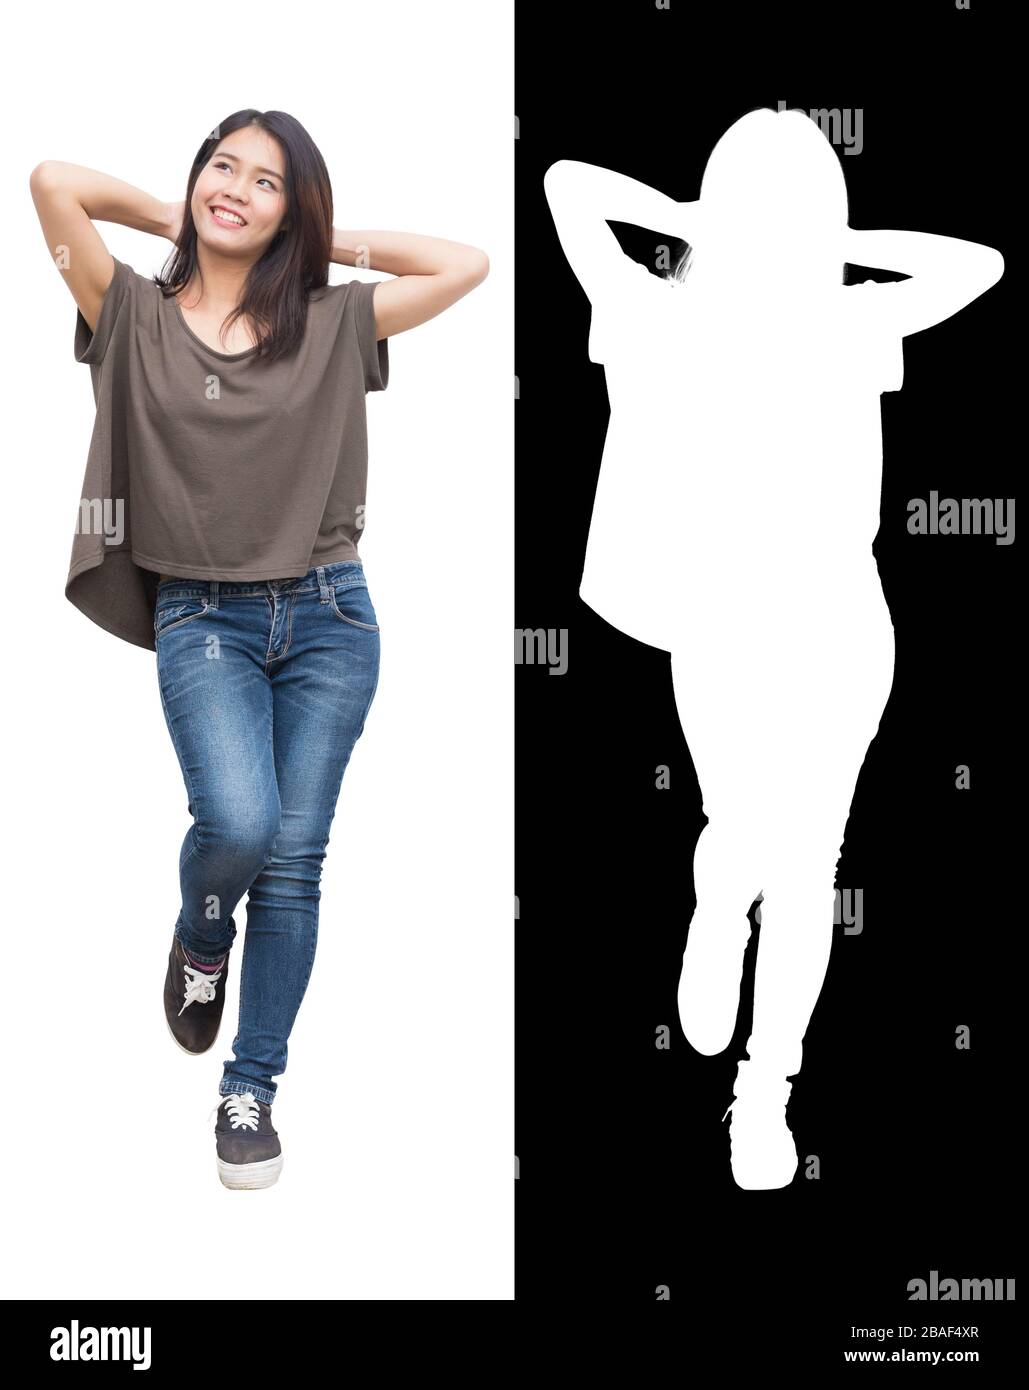 Asiatisches Mädchen Teenager Modell glücklich und Lächeln entspannen sich isoliert auf weißem Hintergrund mit Alphakanal Compositing dicut. Stockfoto